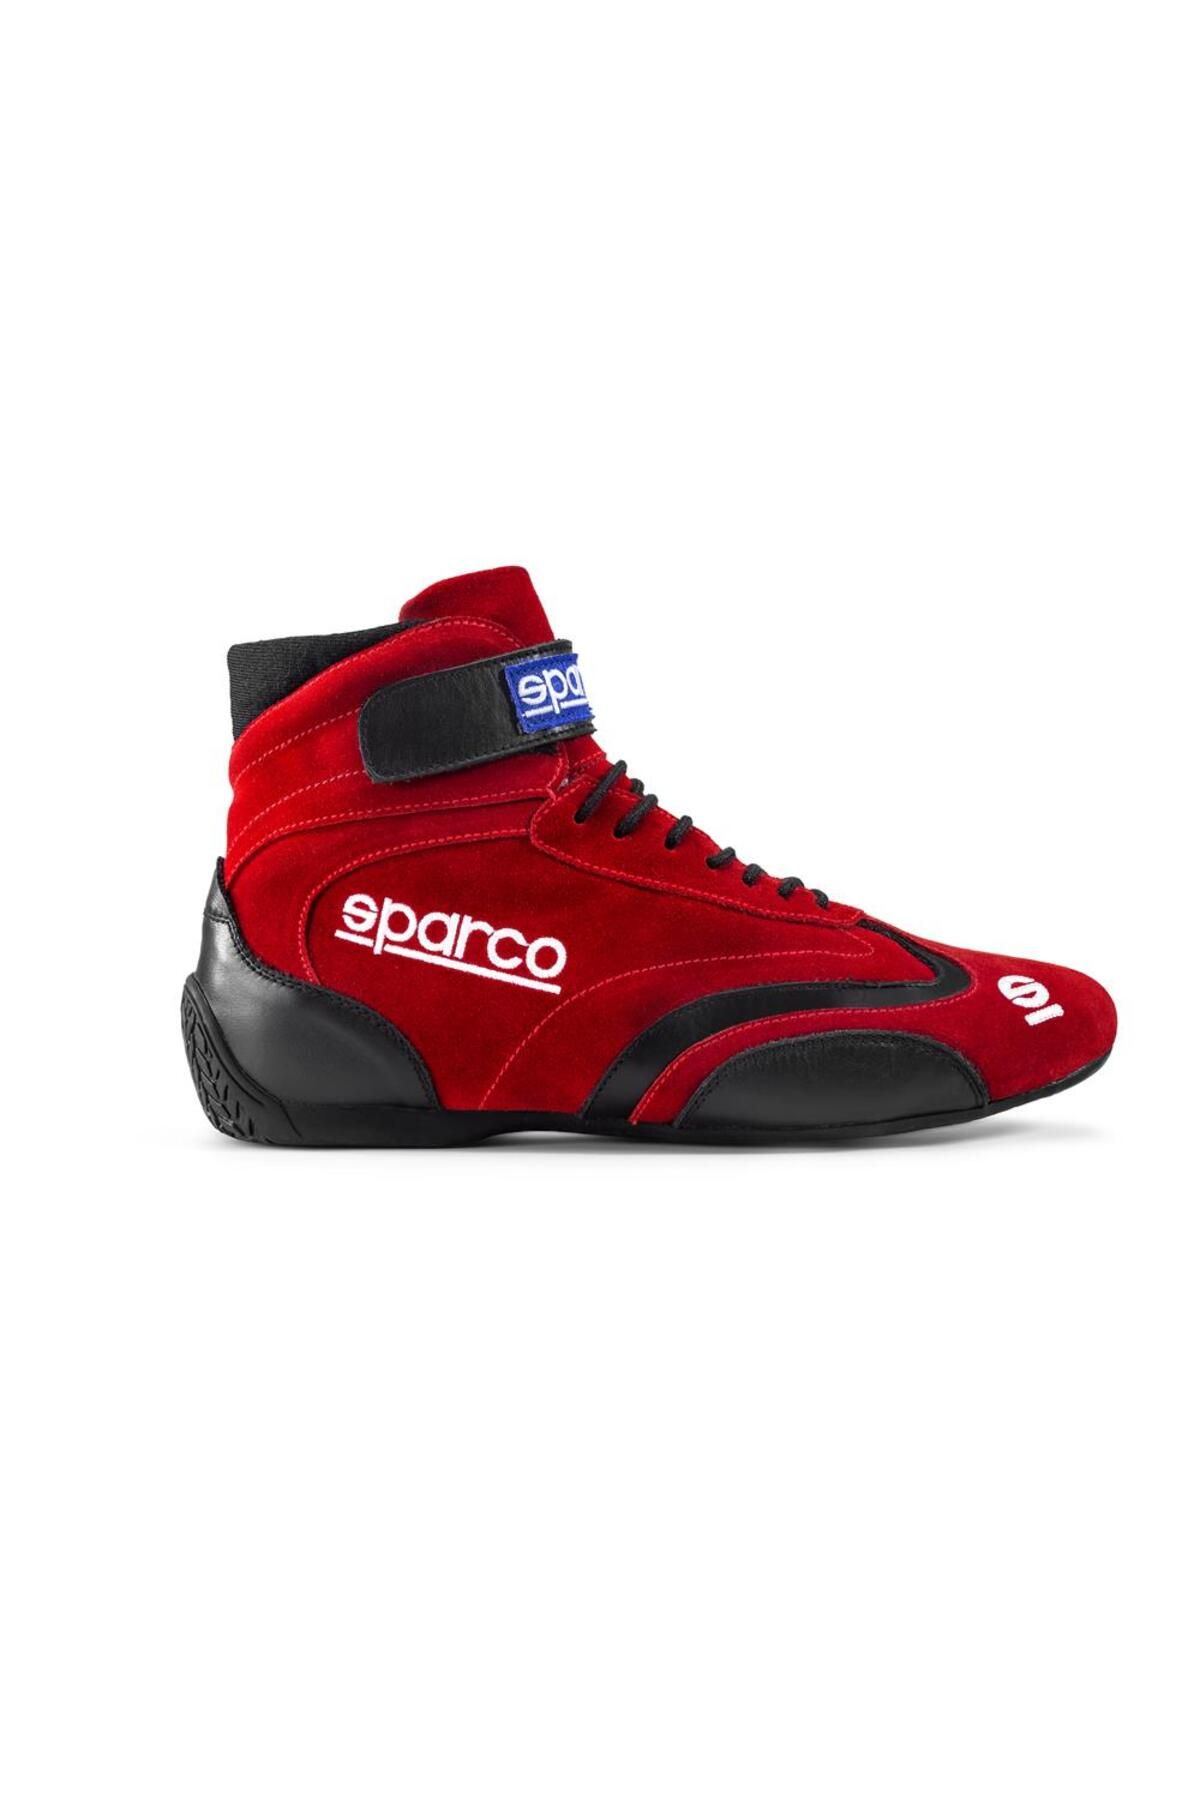 Sparco Top Yarış Ayakkabısı Fia Onaylı Kırmızı 45 Numara